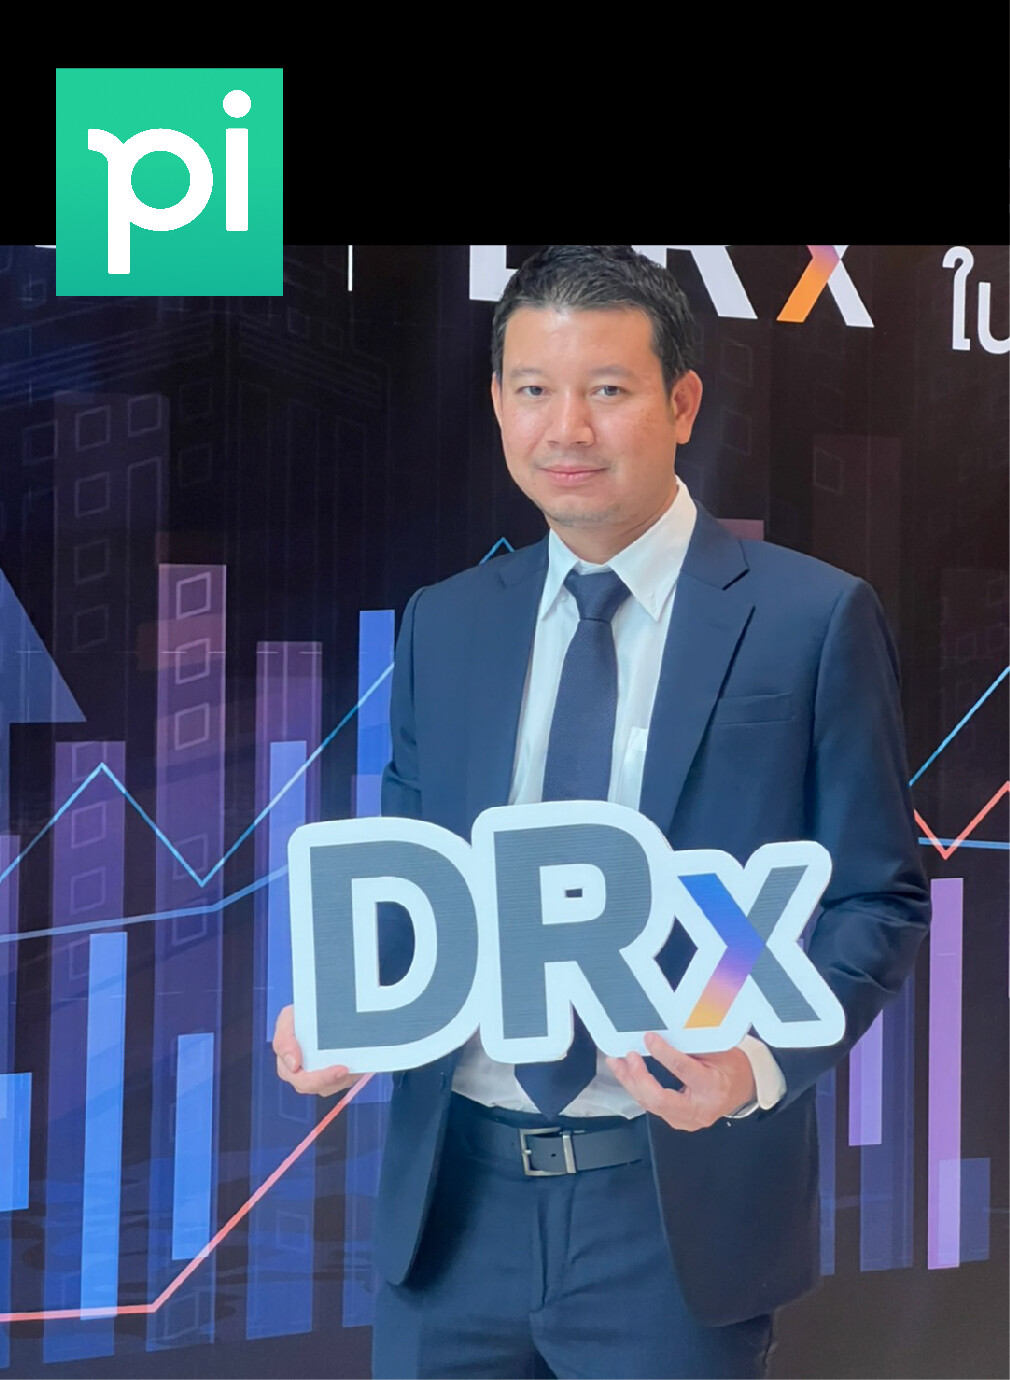 "บล.พาย" (Pi) รับหน้าที่โบรกเกอร์ ยกทัพร่วมงาน 'DRx ผลิตภัณฑ์ใหม่ตลาดทุนไทย' พร้อมเสนอลงทุนหุ้นต่างประเทศ IPO 29 ก.ย.นี้